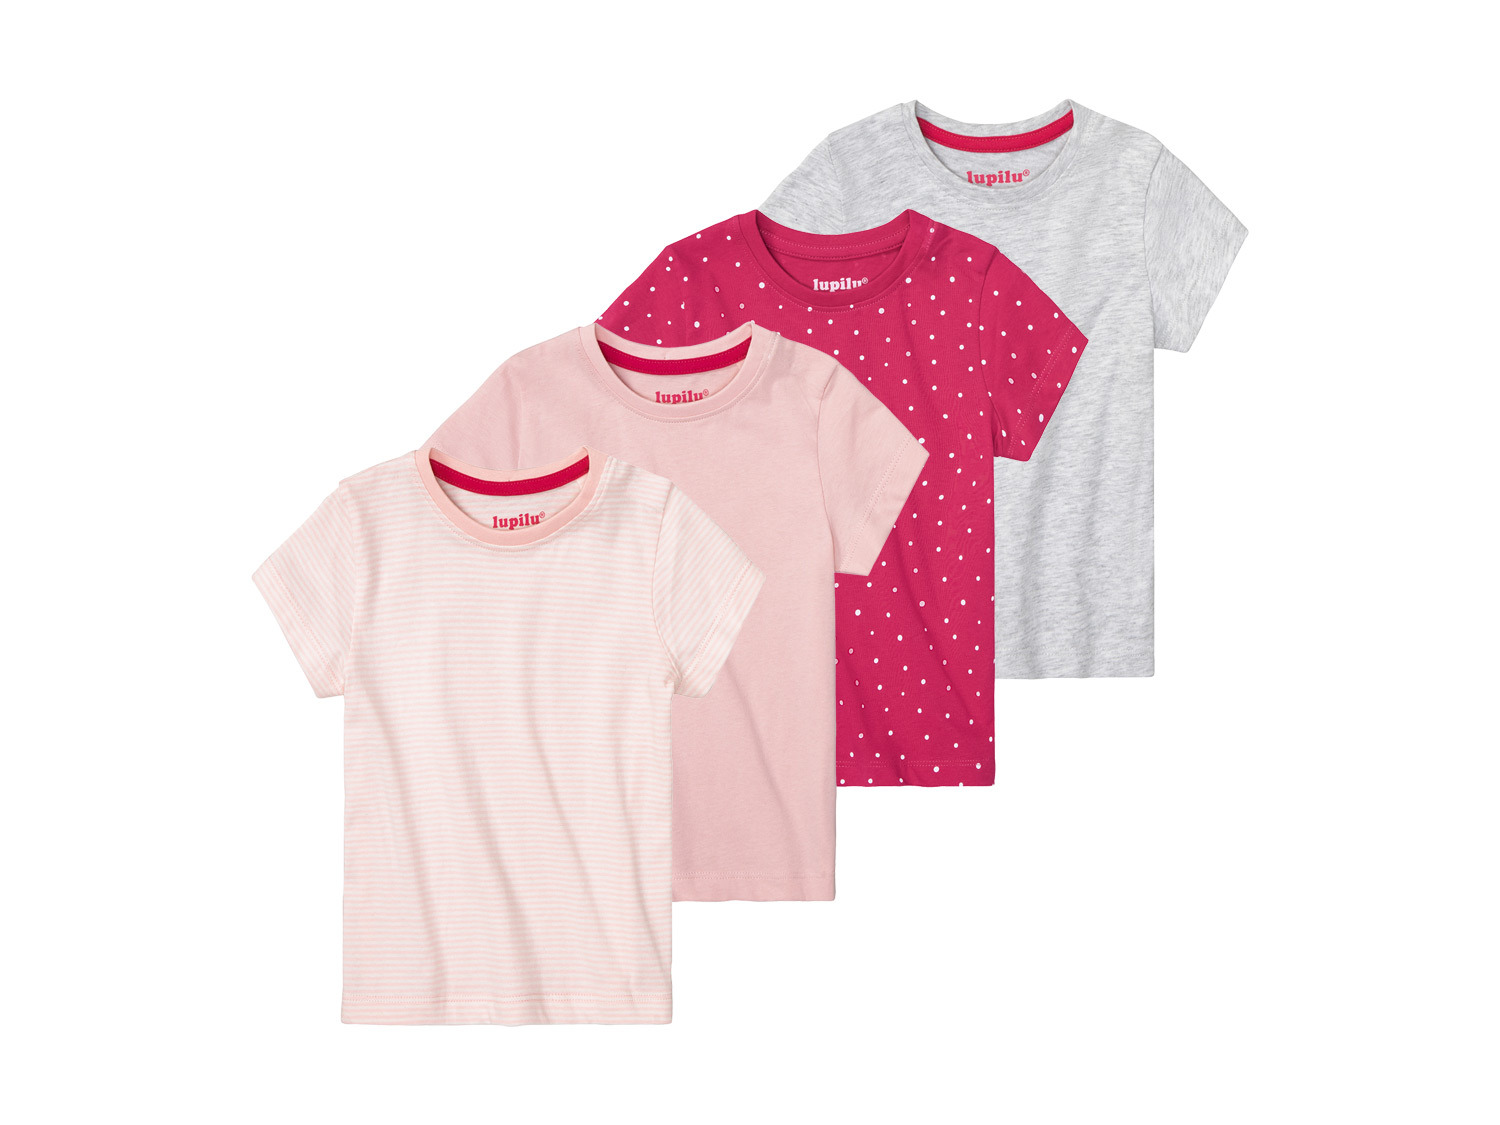 Mädchen T-Shirts aus weicher Single-Jersey-Qualität